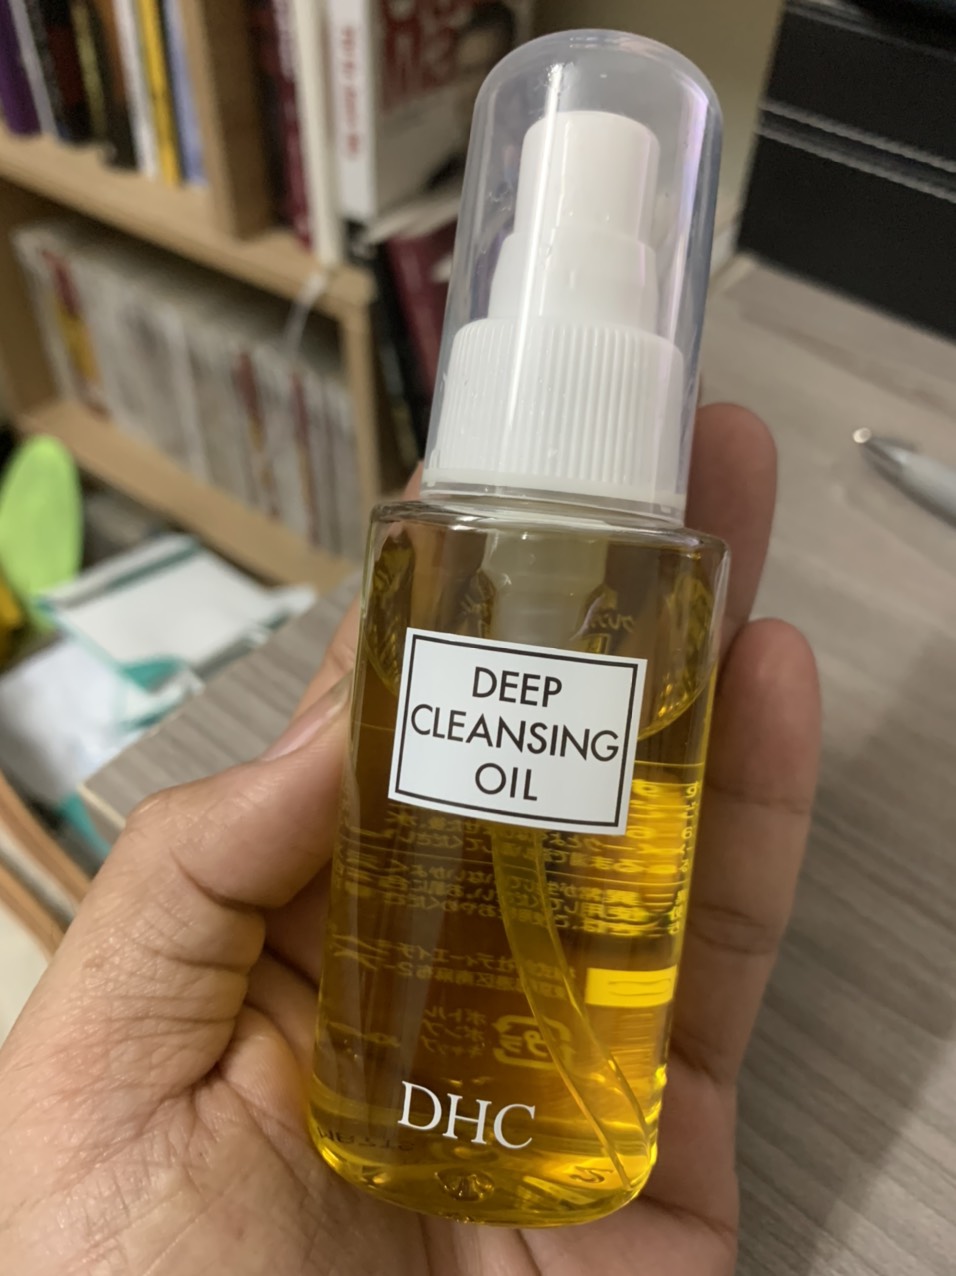 [FLASH SALE] Dầu tẩy trang DHC Deep Cleansing Oil Nhật Bản chính hãng